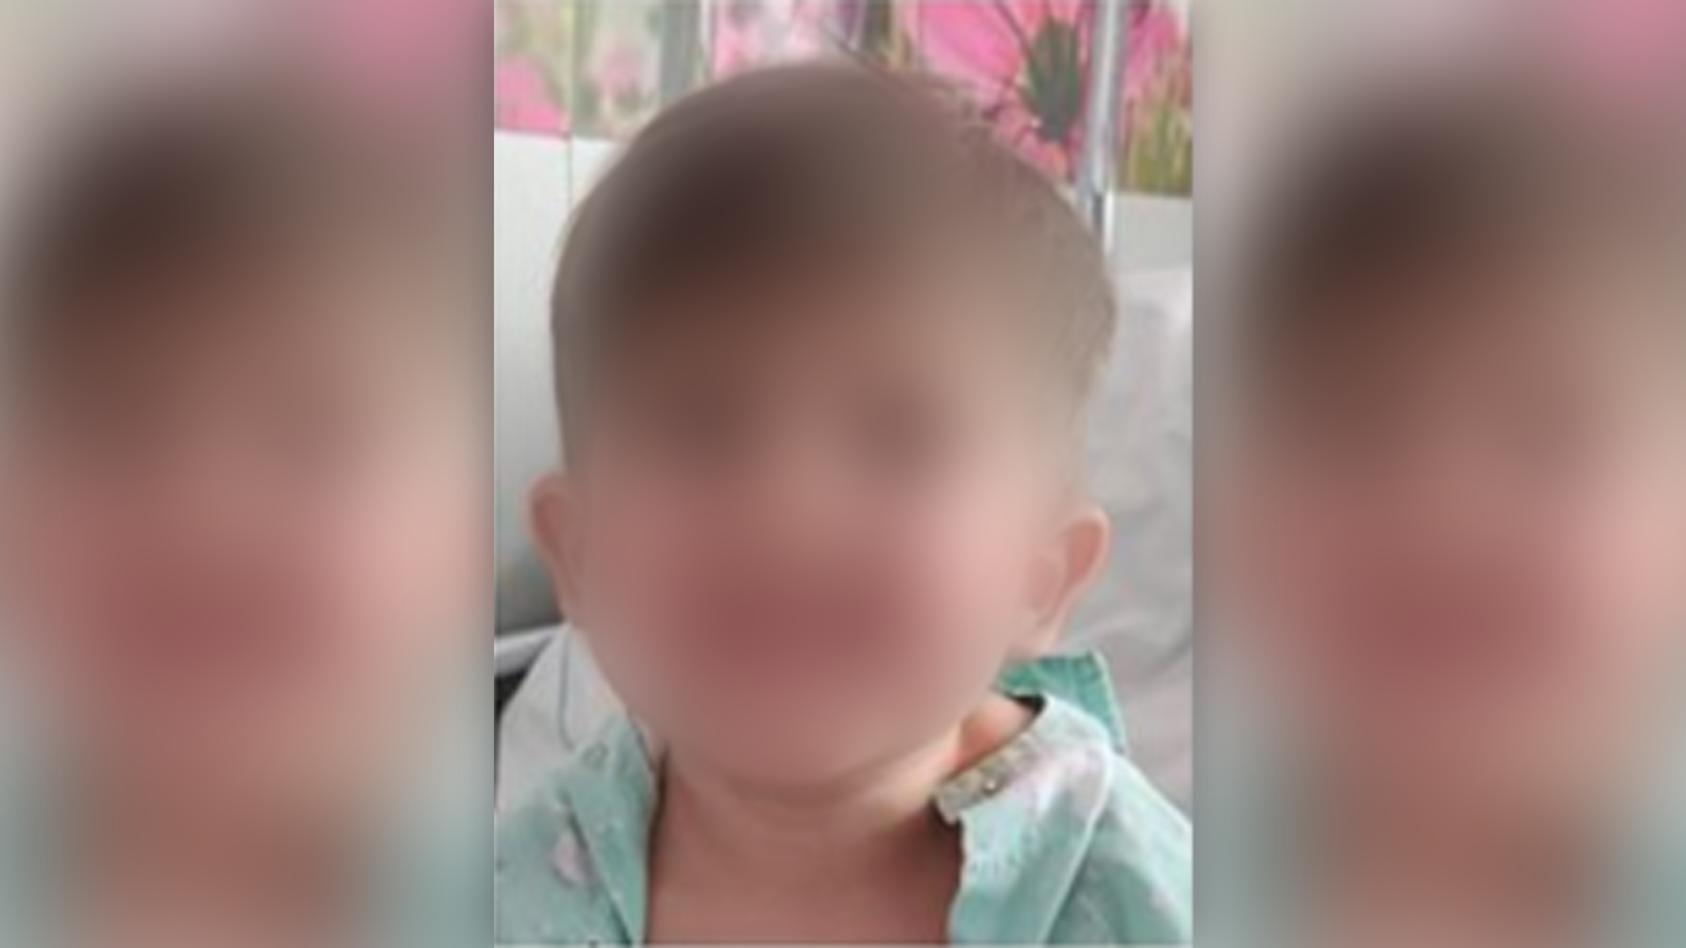 kind-von-babysitter-entfuhrt-belgien-dean-4-tot-aufgefunden